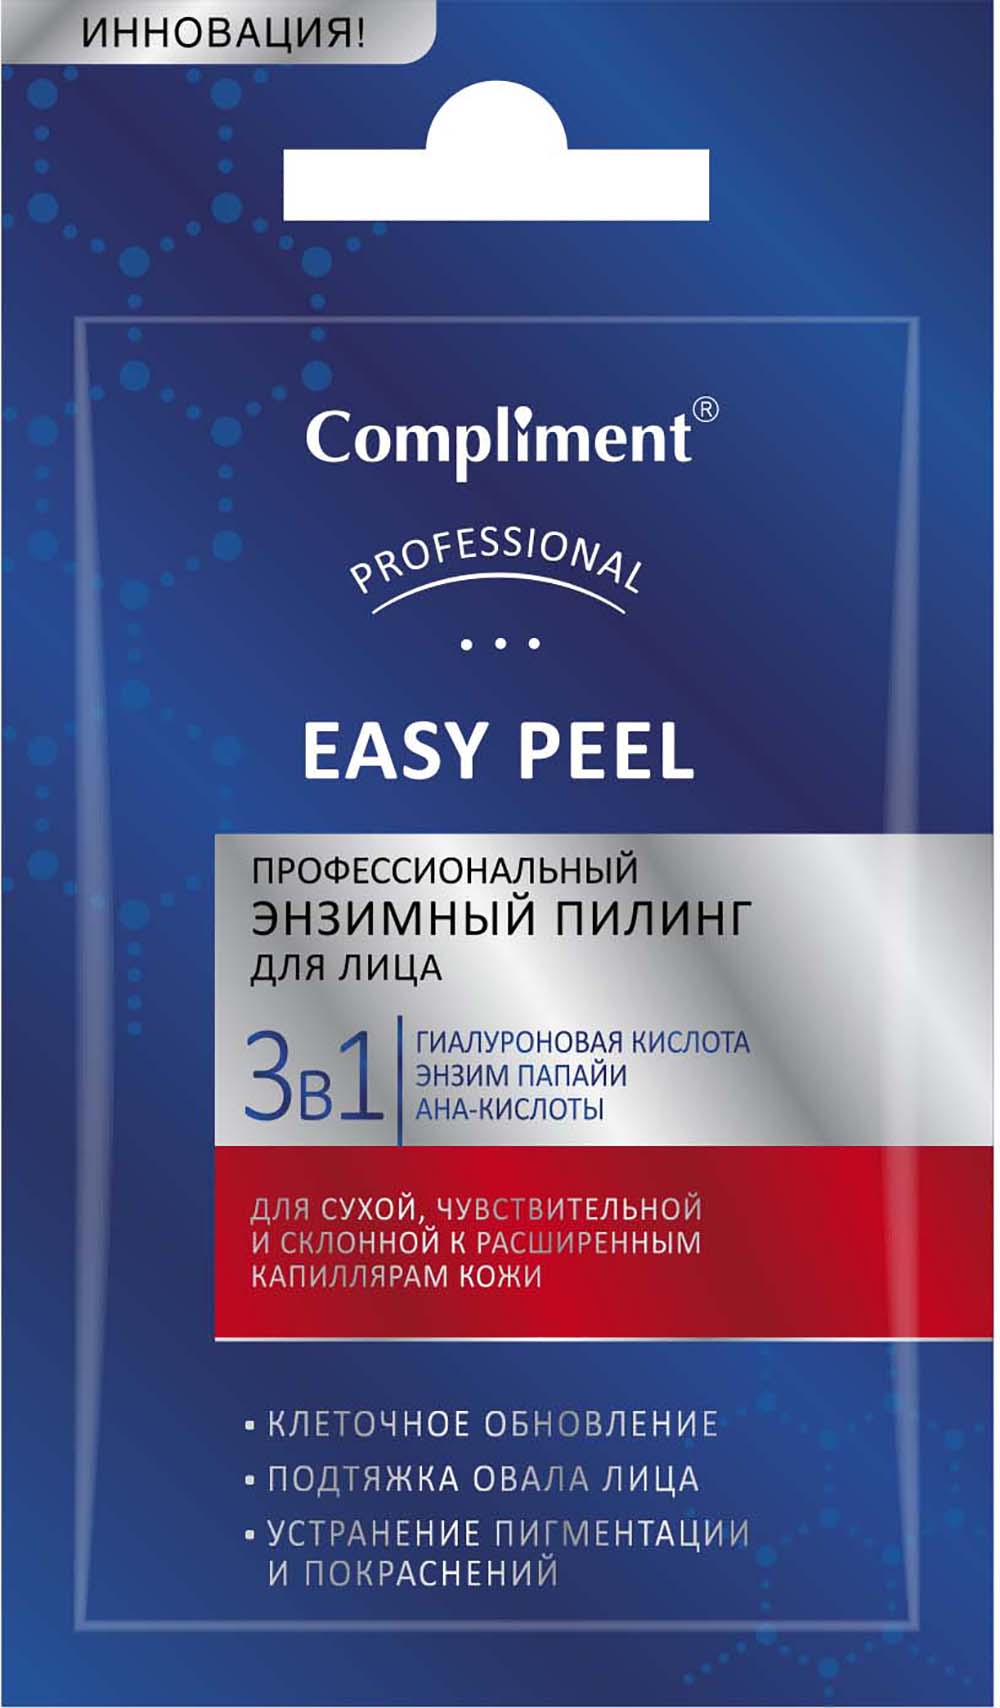 Compliment Саше Easy Peel профессиональный энзимный пилинг 3 в 1 для лица 7мл